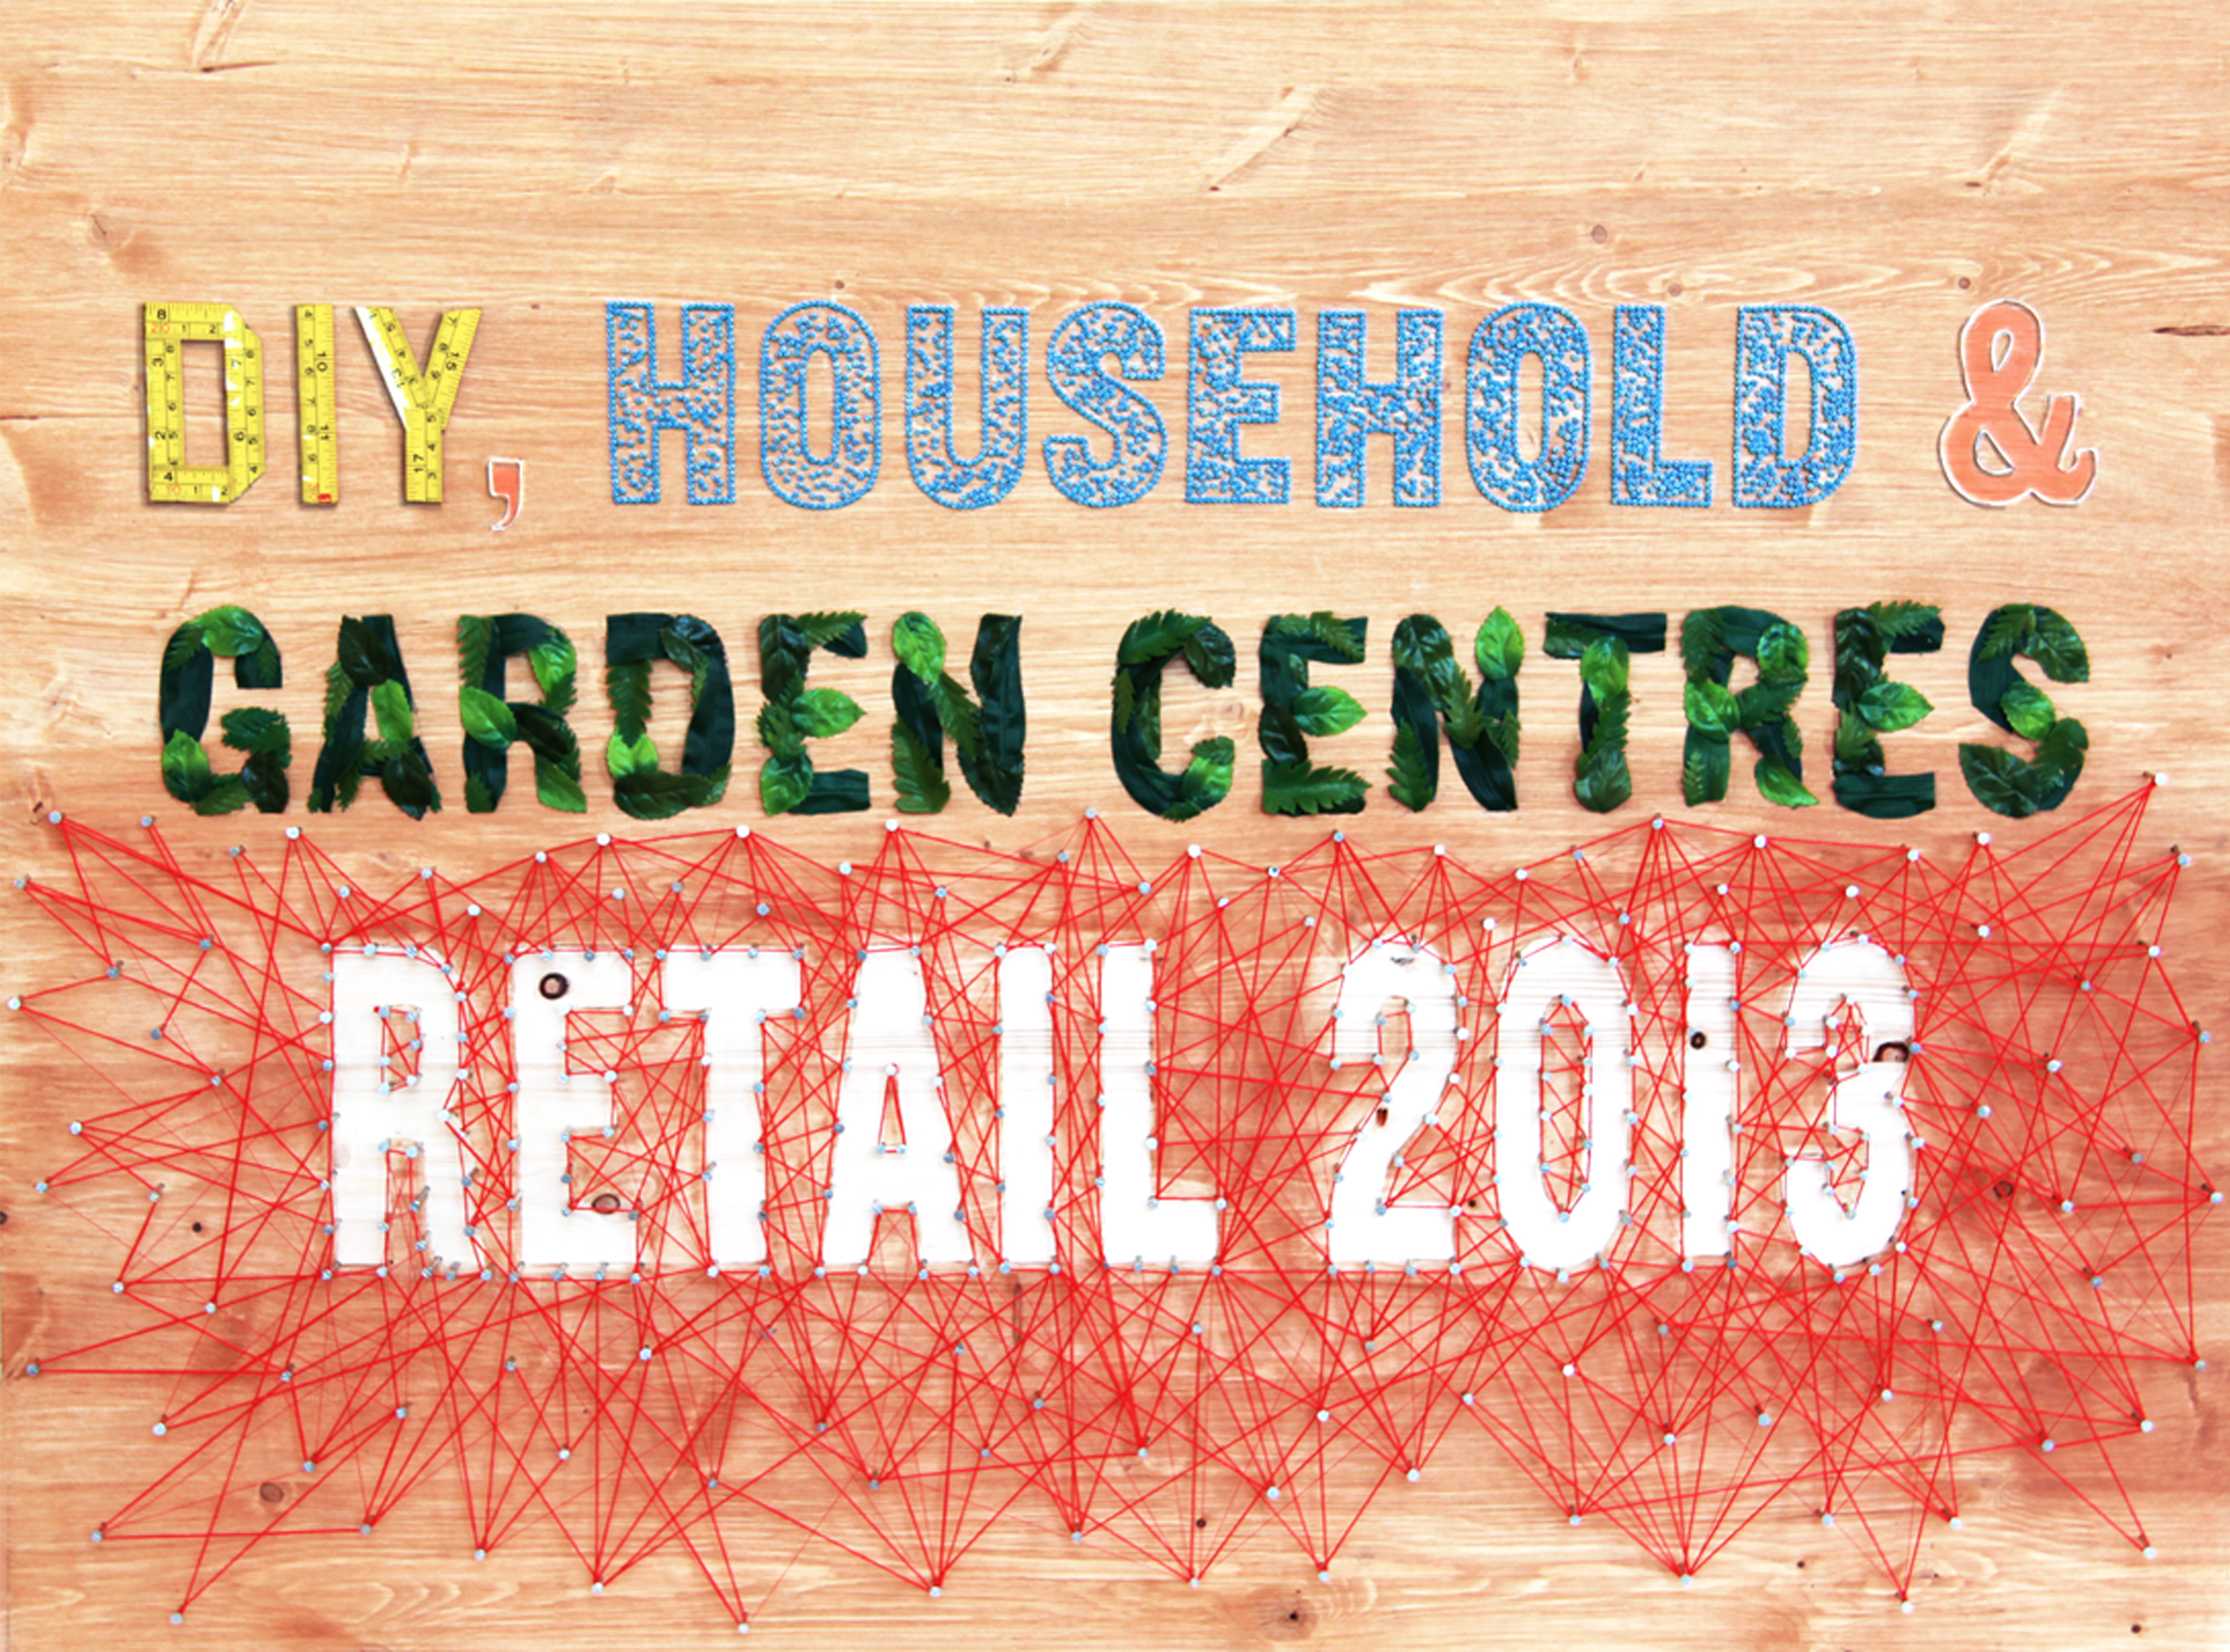 DIY, Household & Garden Centres Retail 2013